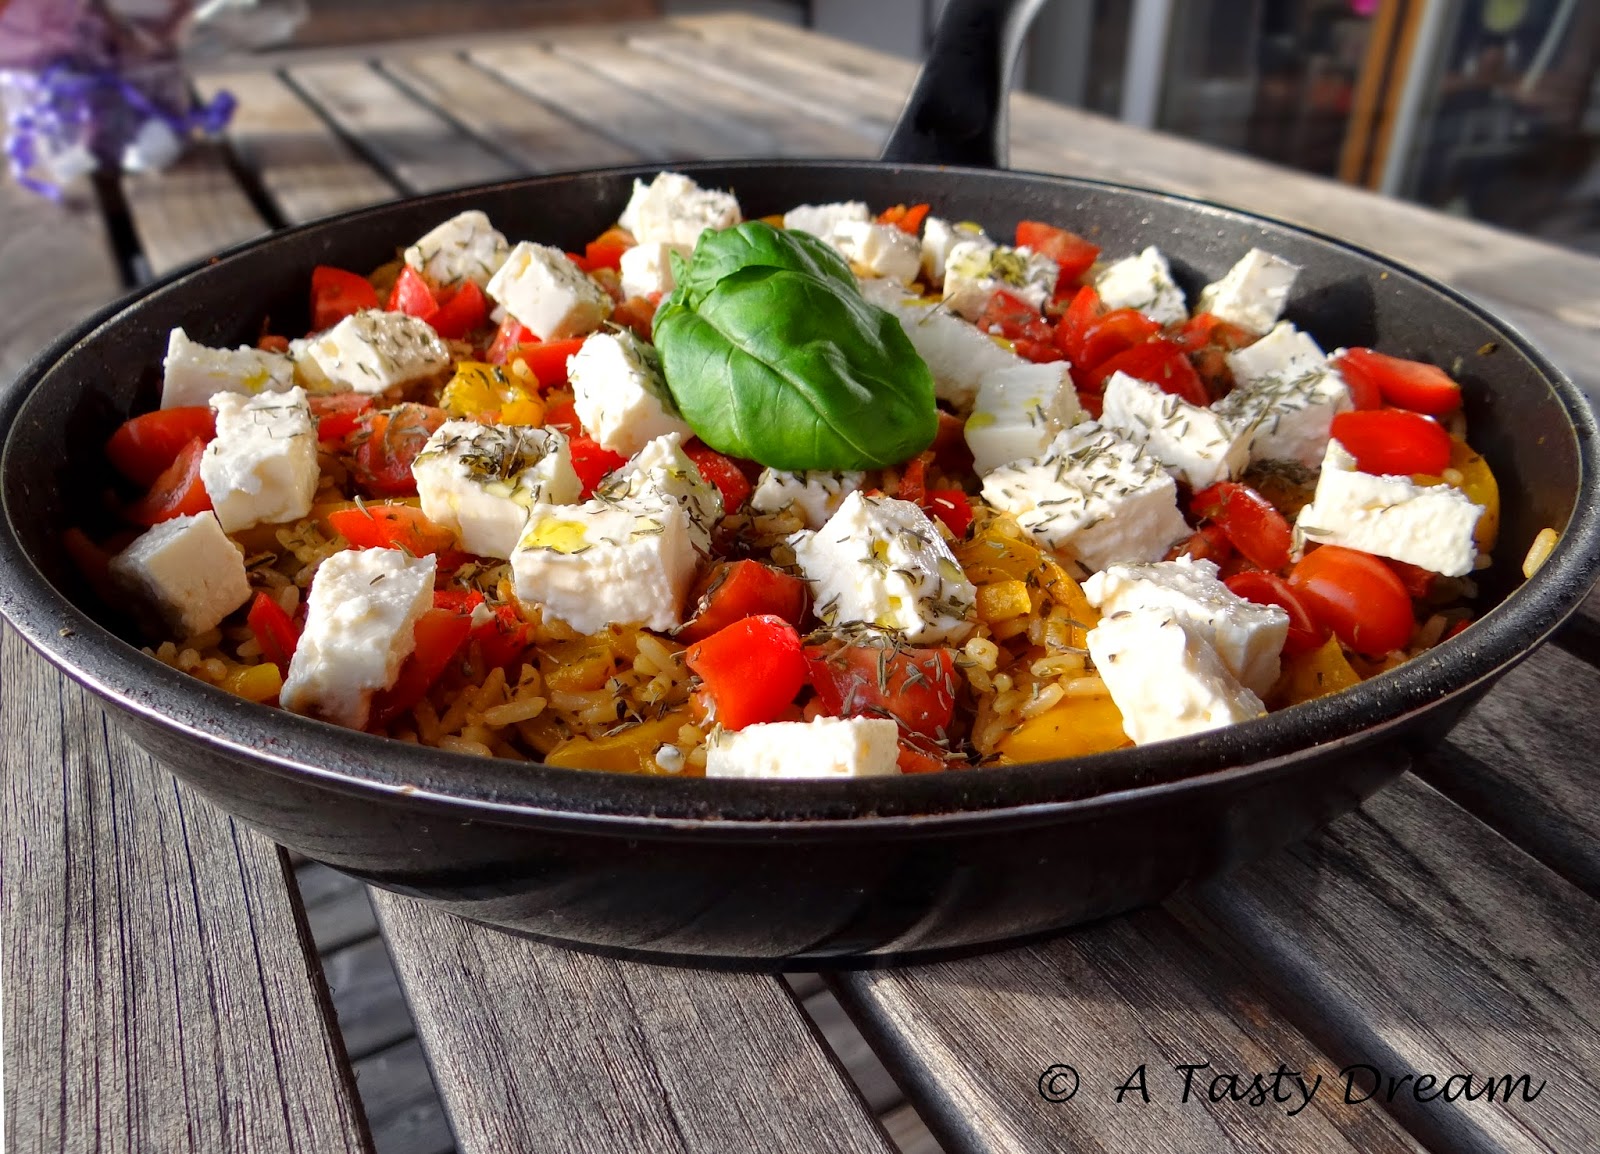 A Tasty Dream: Griechische Reispfanne